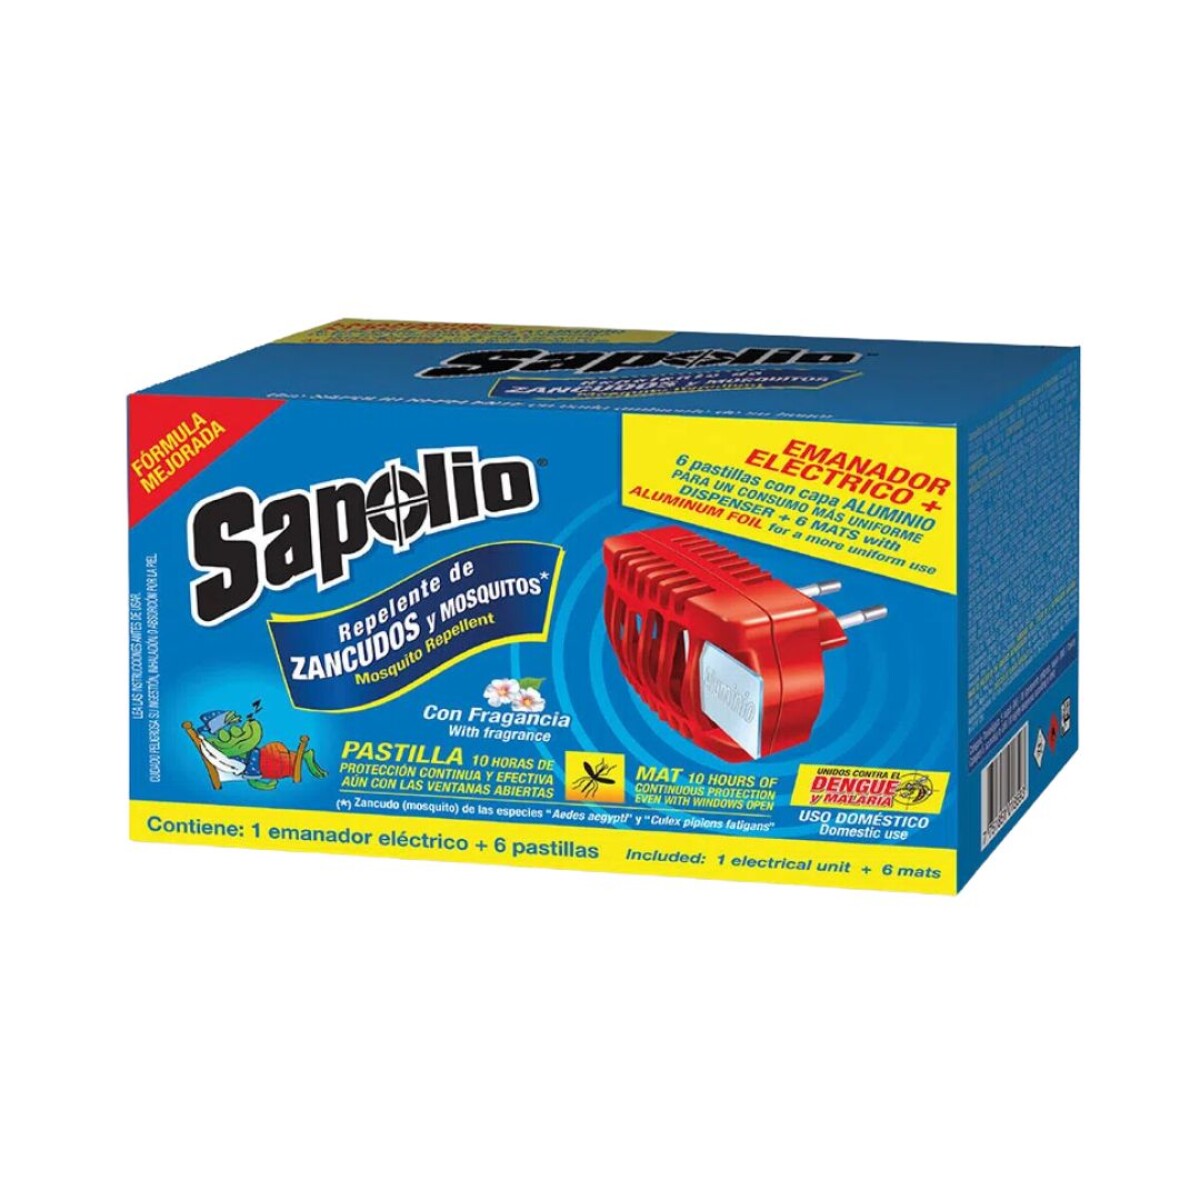 Aparato eléctrico + 6 pastillas repelentes Sapolio 